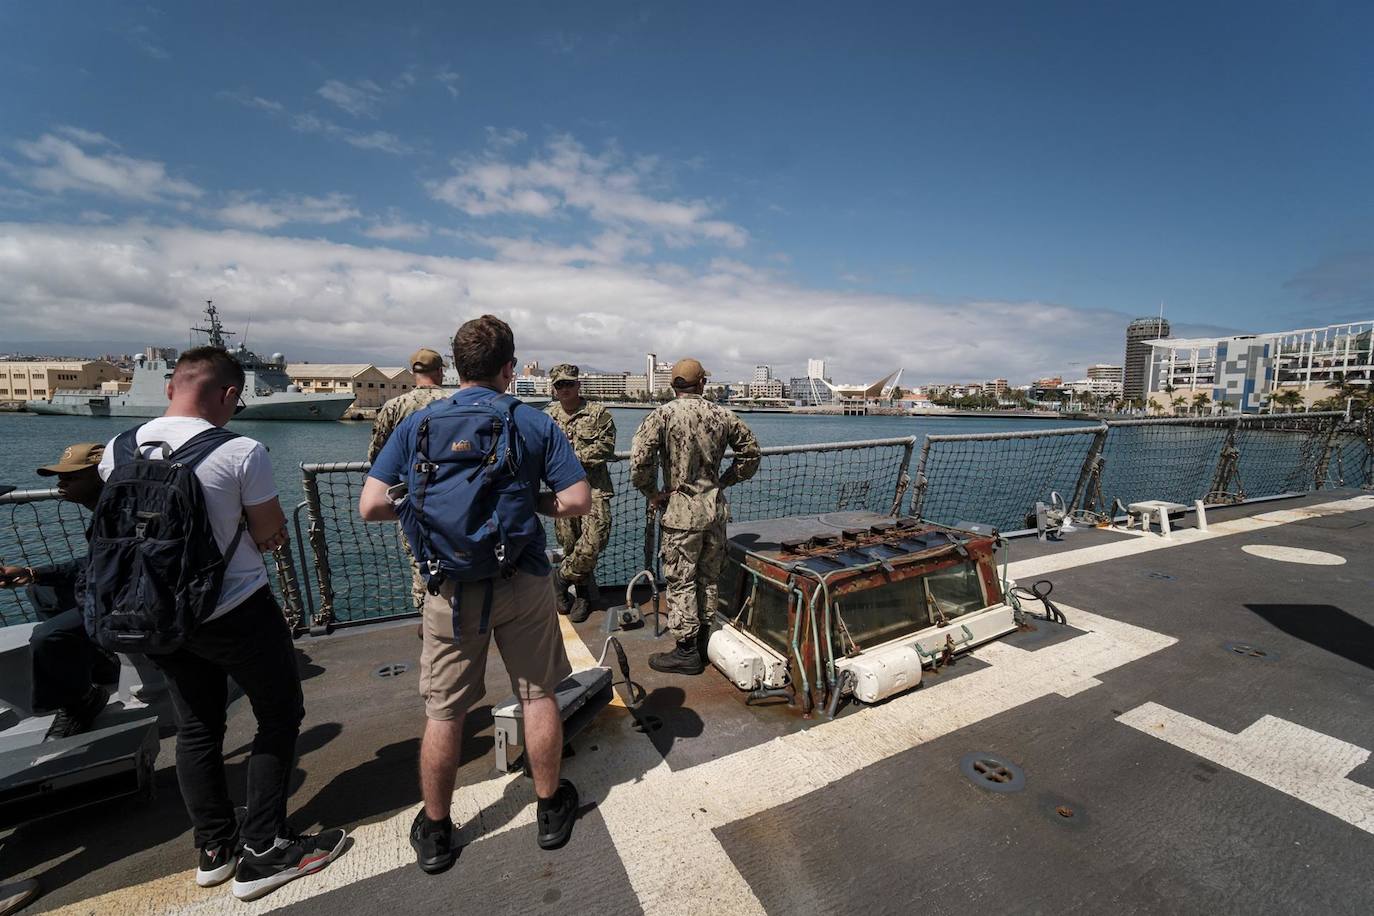 Fotos: El destructor USS Bulkeley, hace escala en Gran Canaria